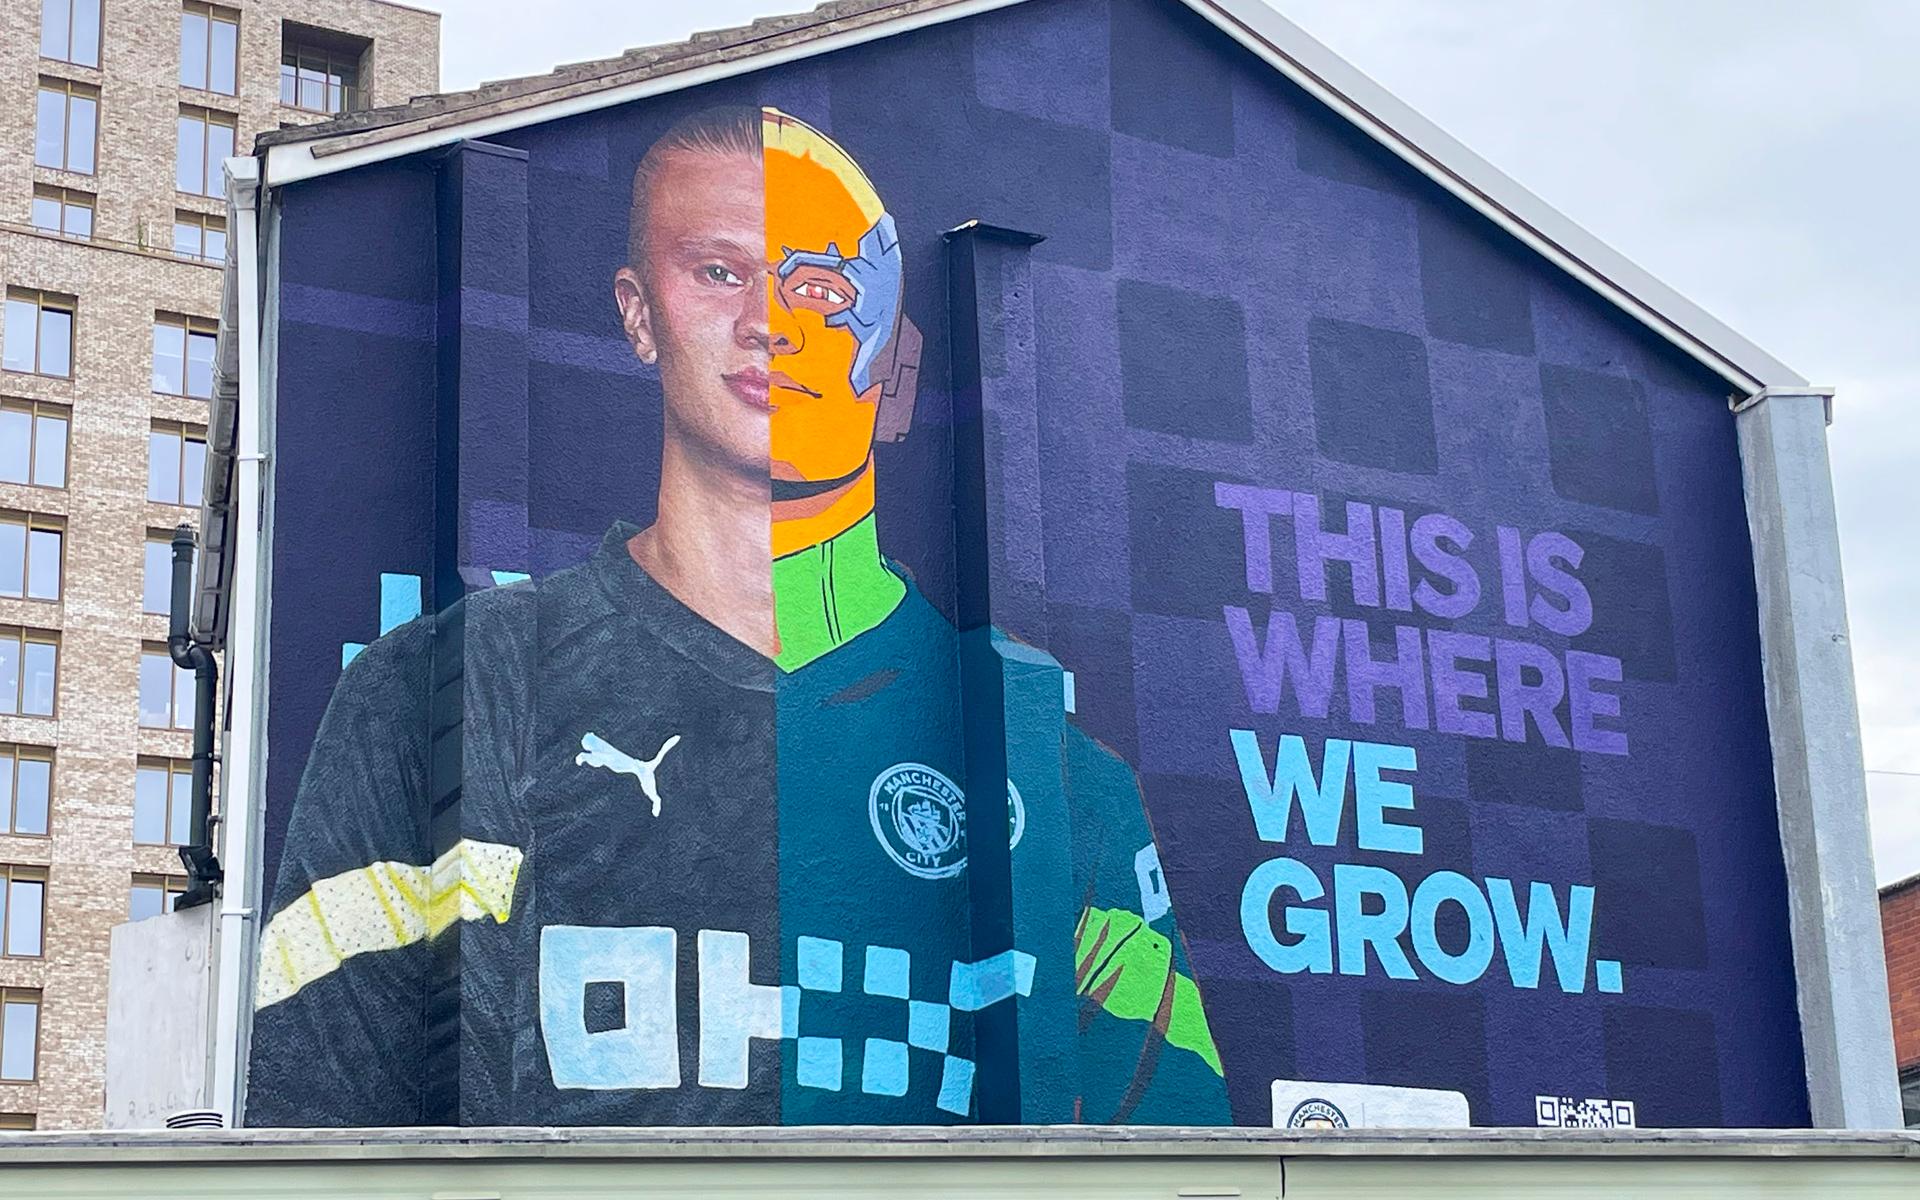 I samband med presentationen som City-spelare fick han står reklamaffisch i centrala Manchester.